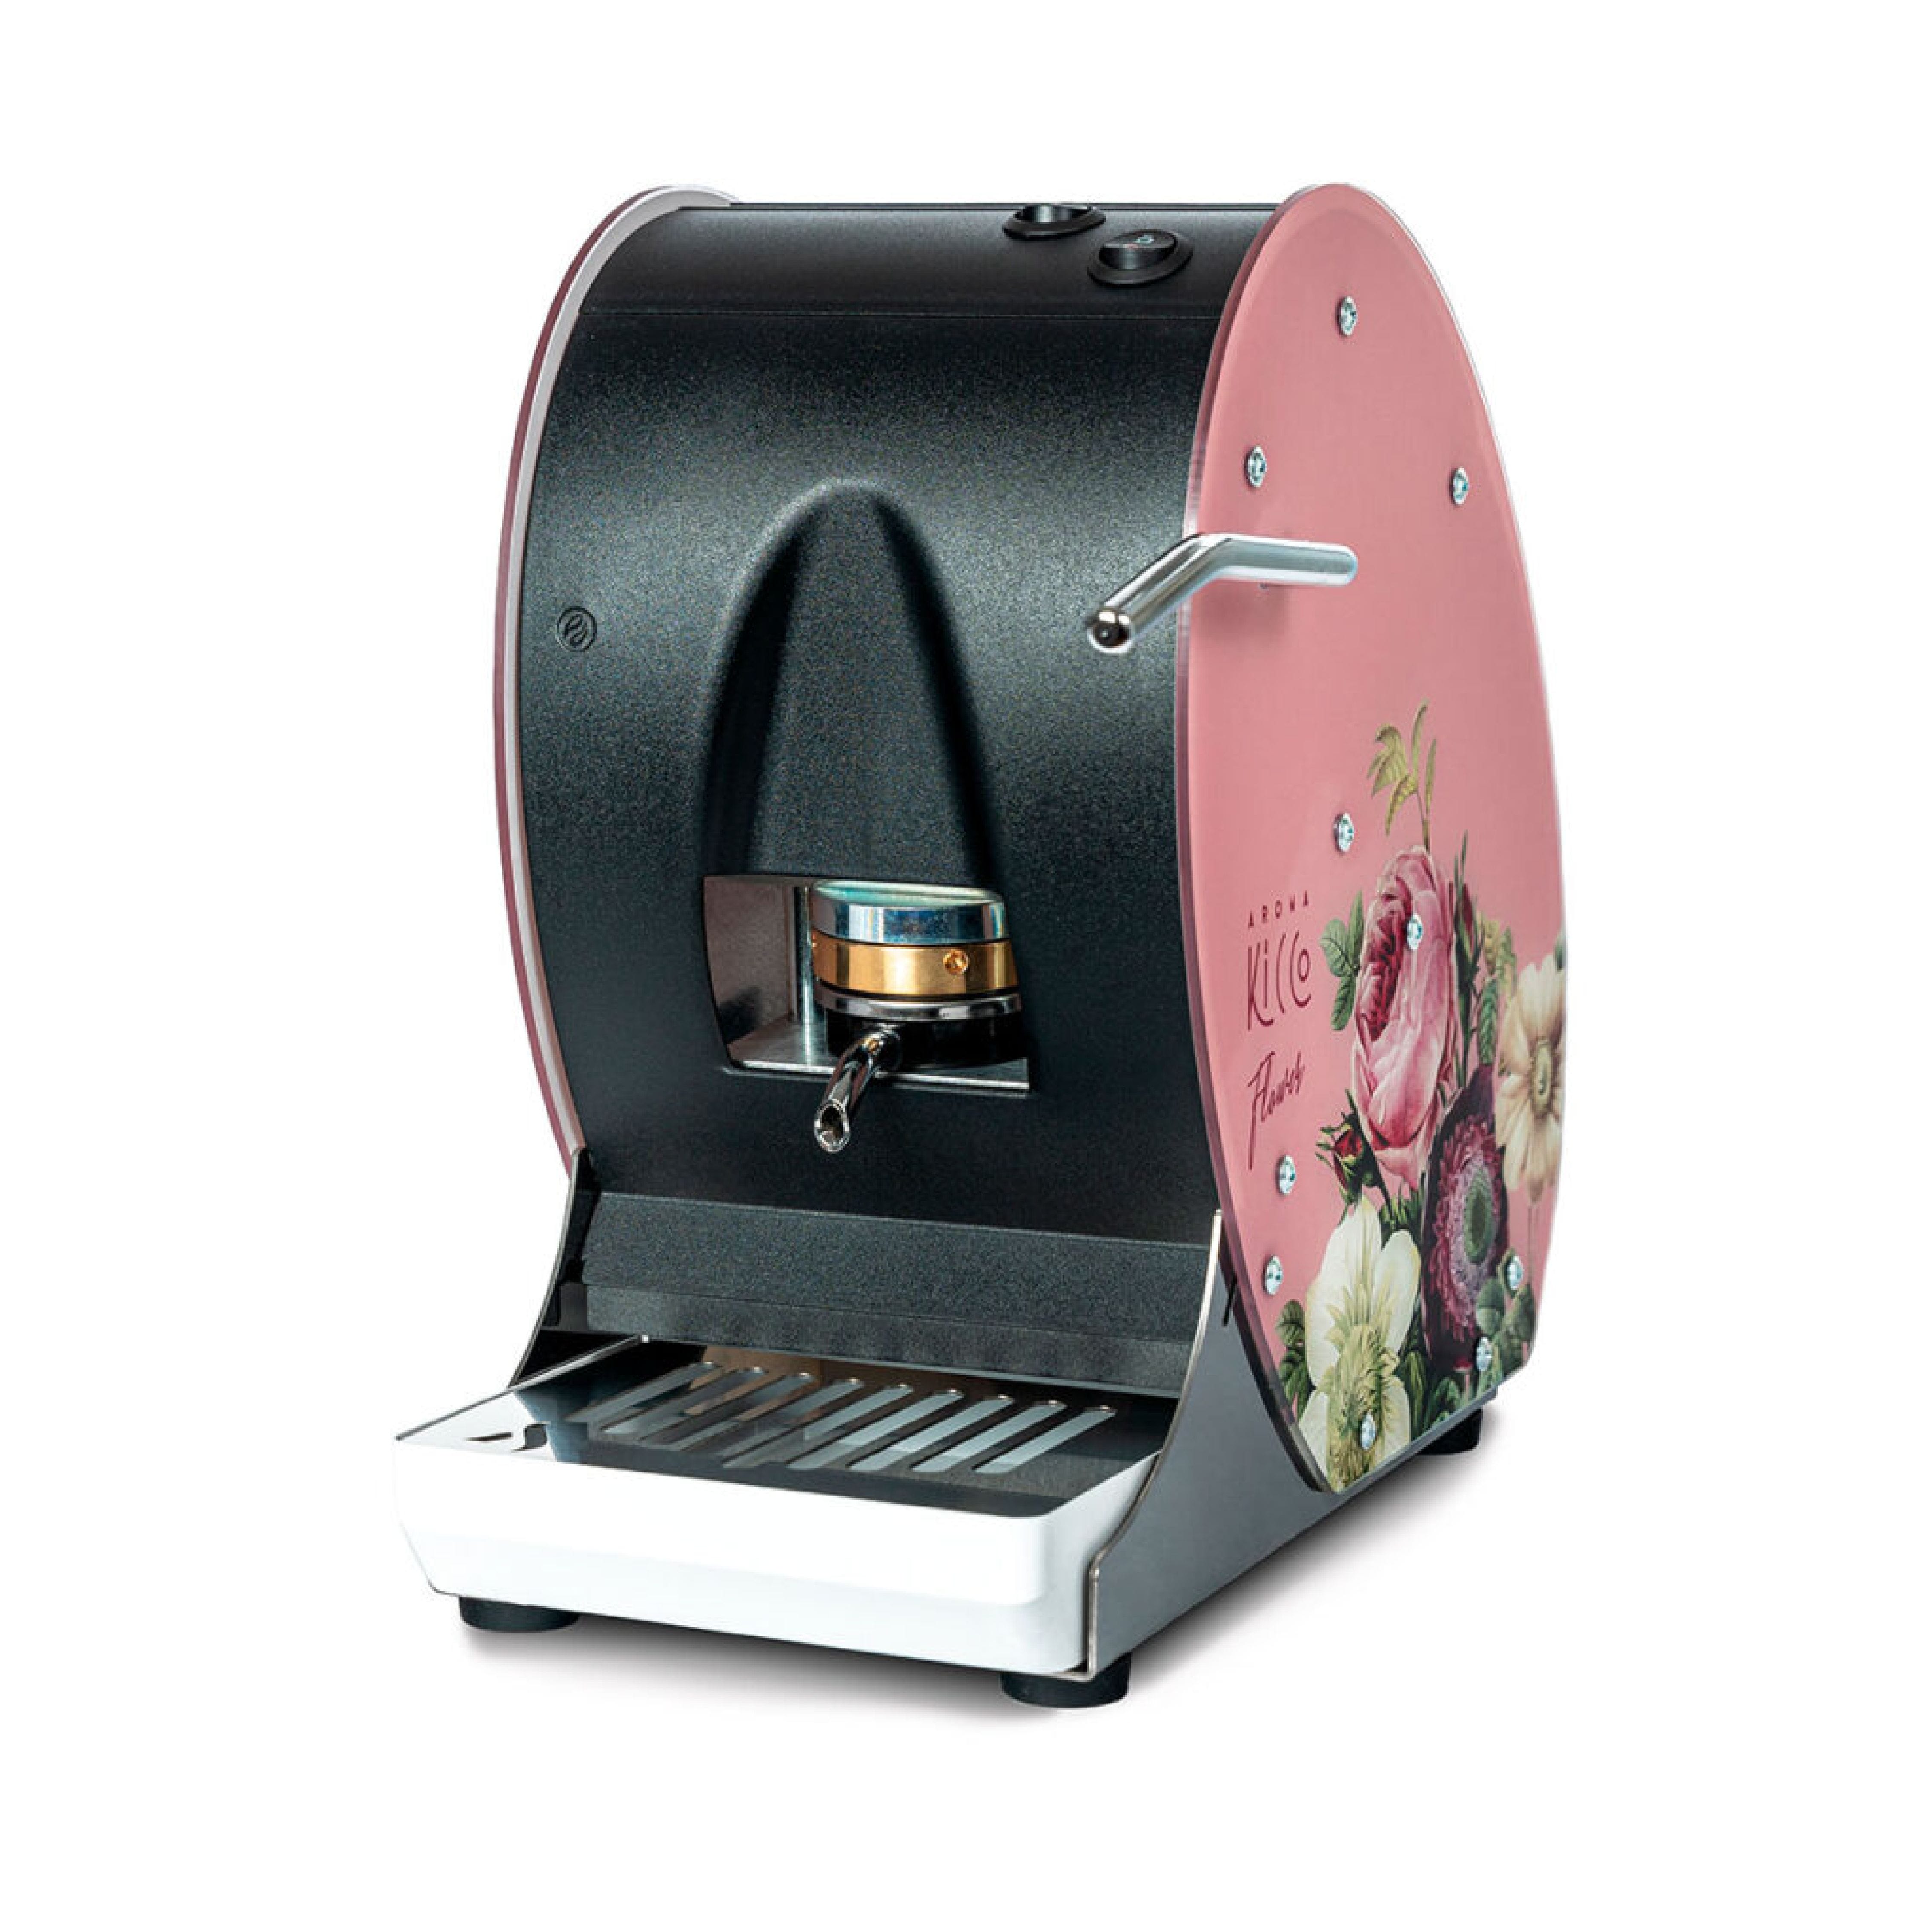 Macchina Caffe Mod. Kicco ABS Flower Rosa 01